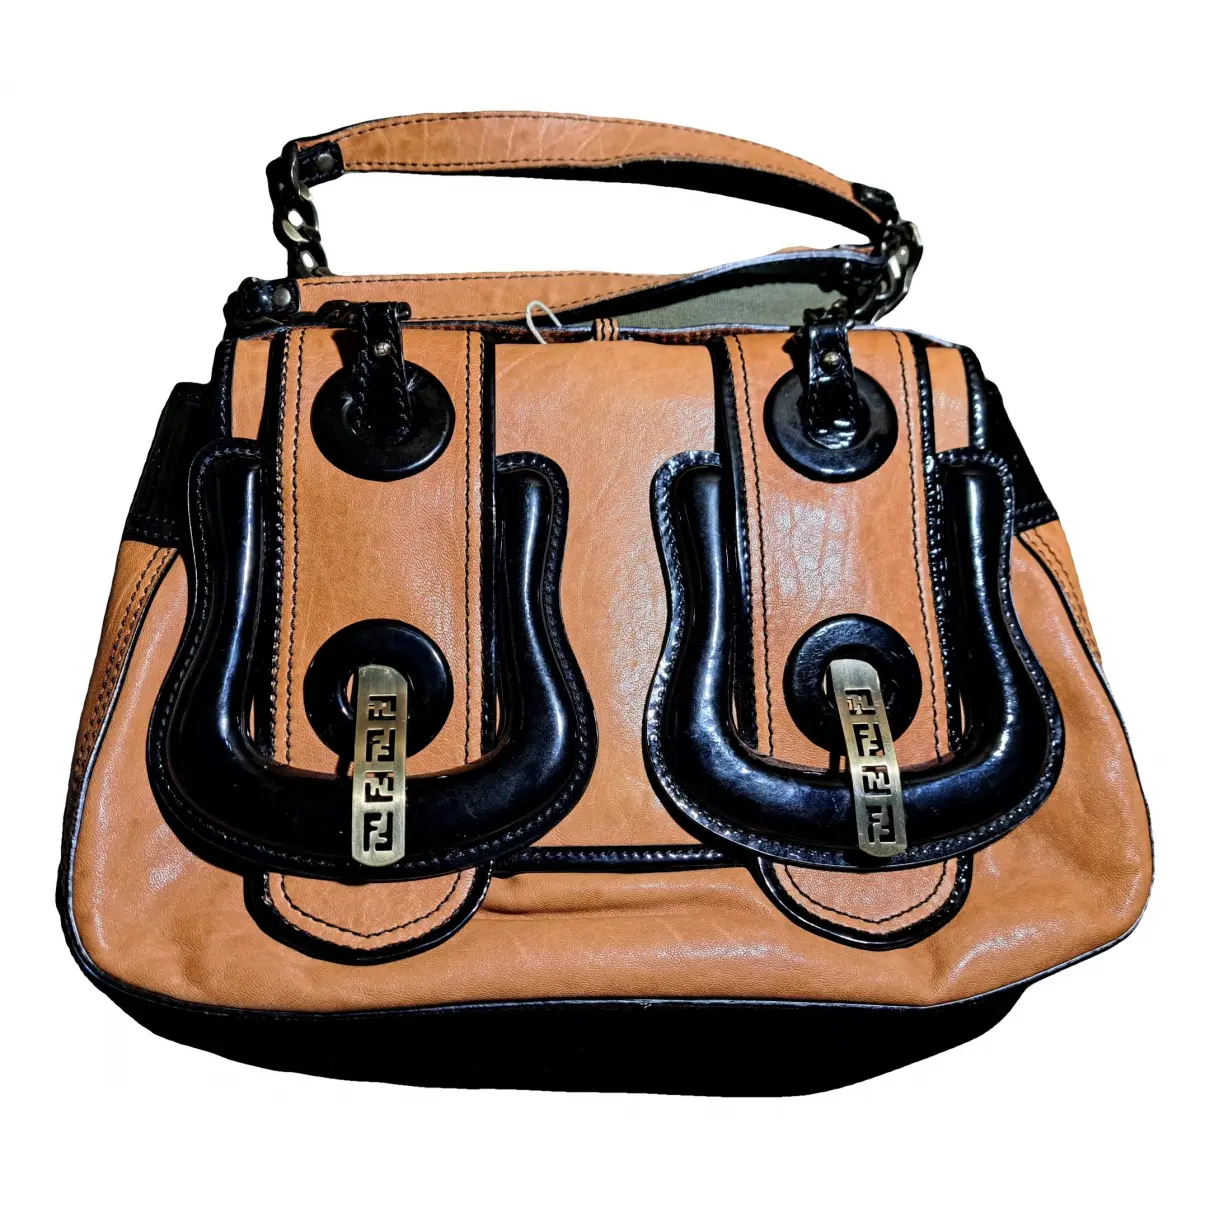 Bag leather handbag